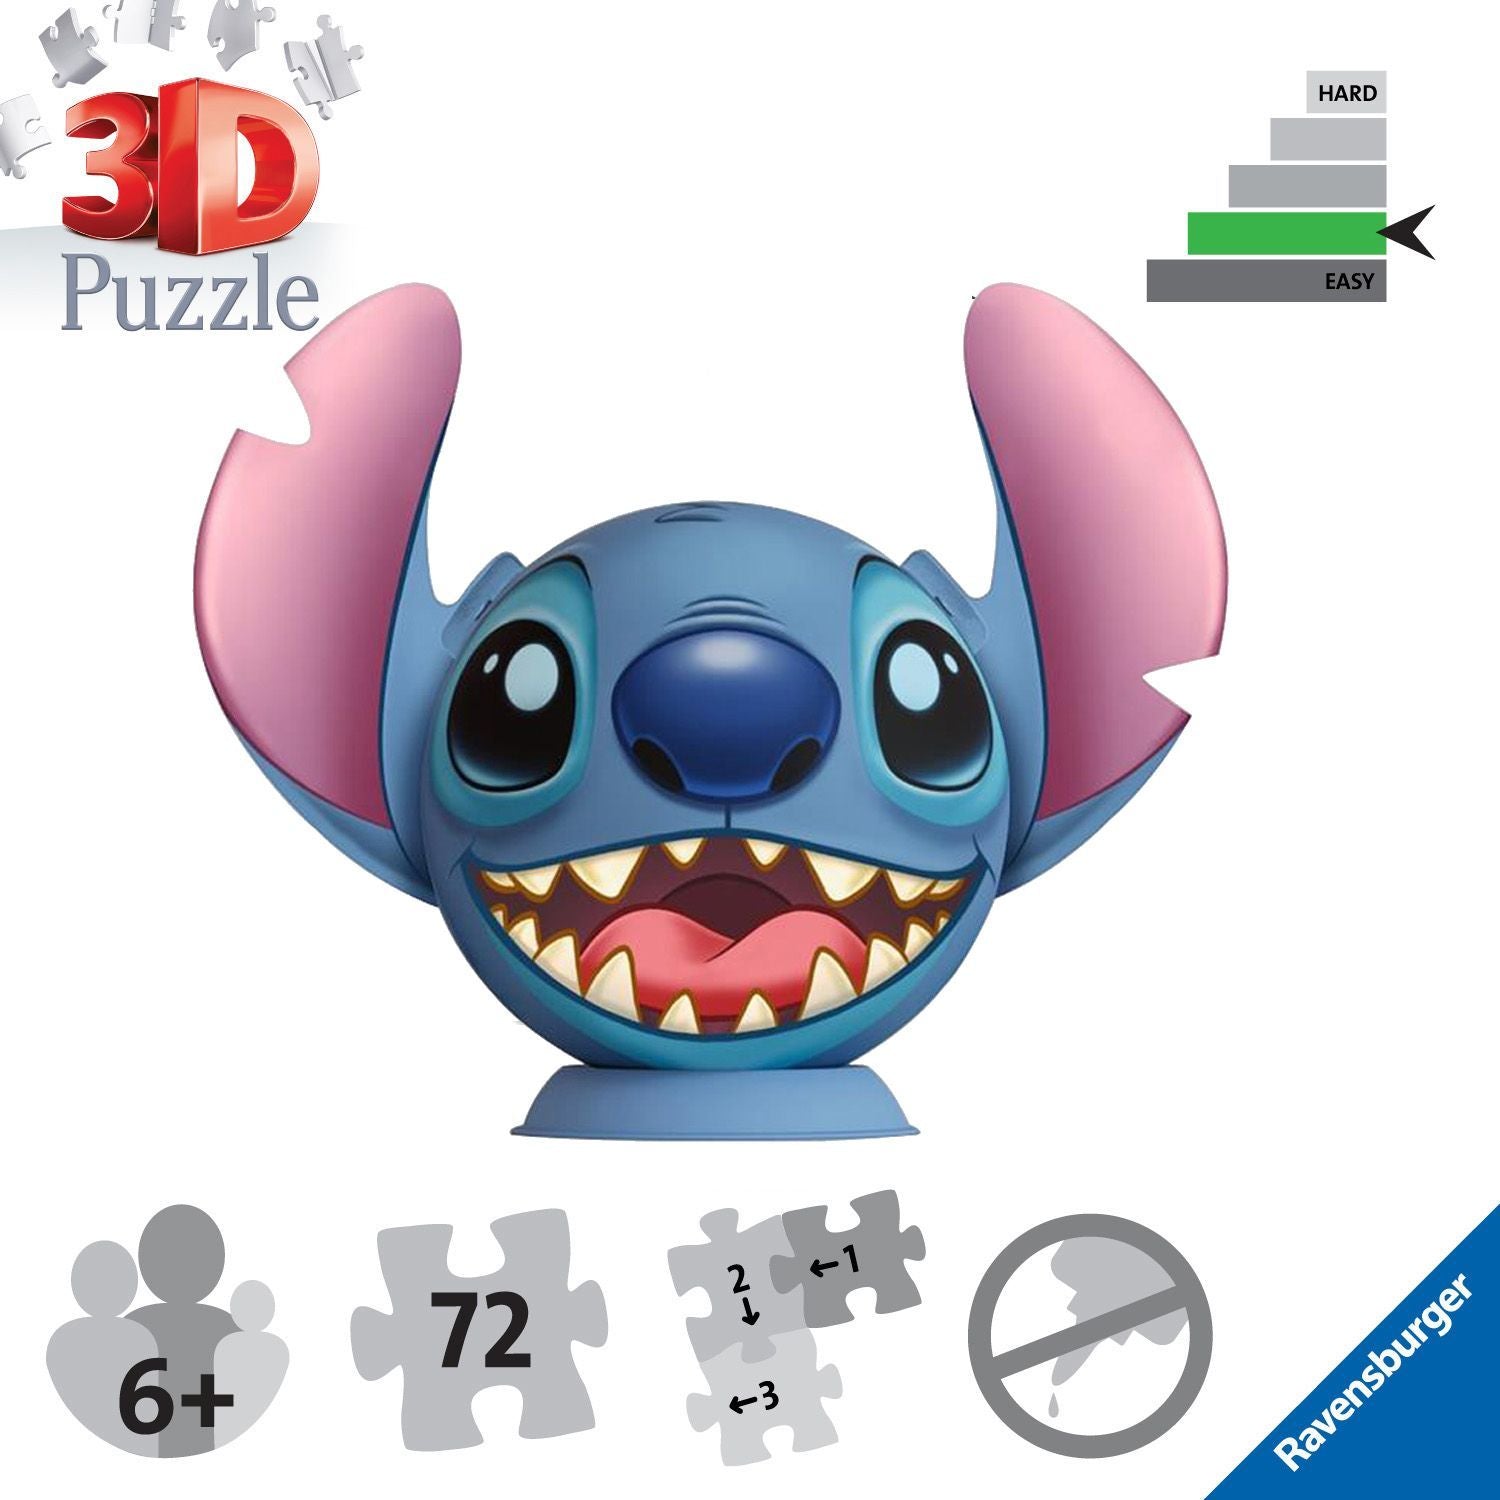 Disney Stitch 49 Piece Jigsaw Puzzle 3 Pack